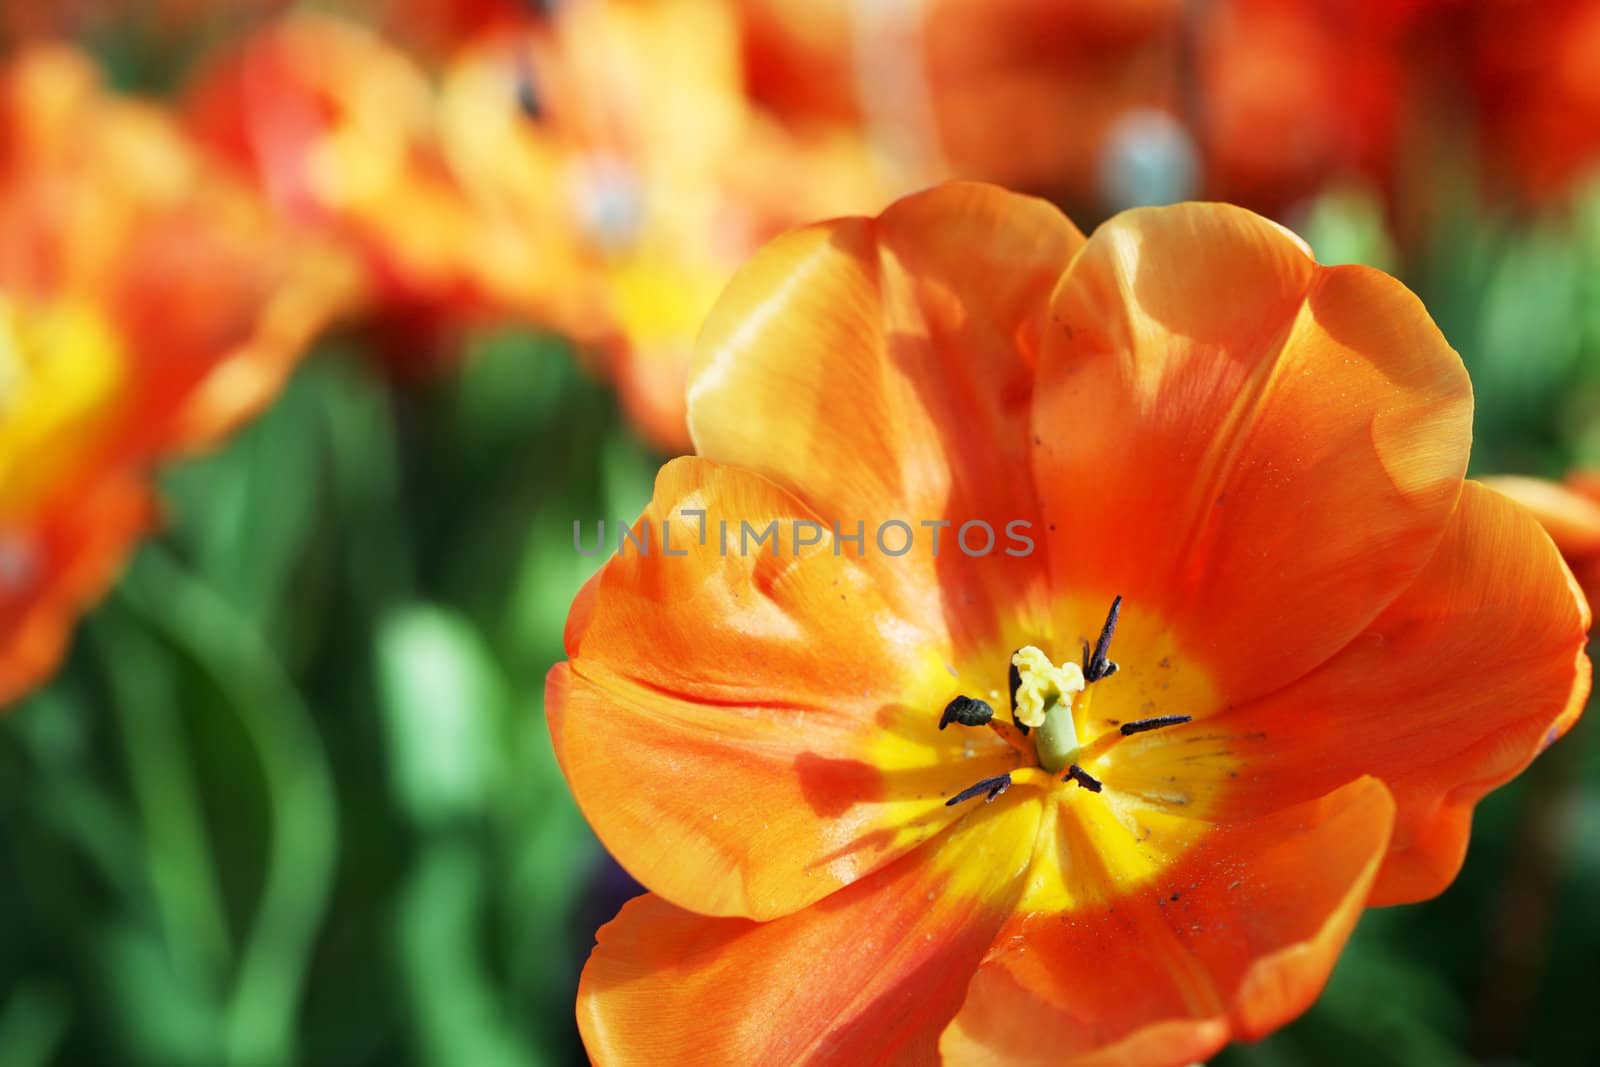 Orange tulips in summer sunshine by jarenwicklund